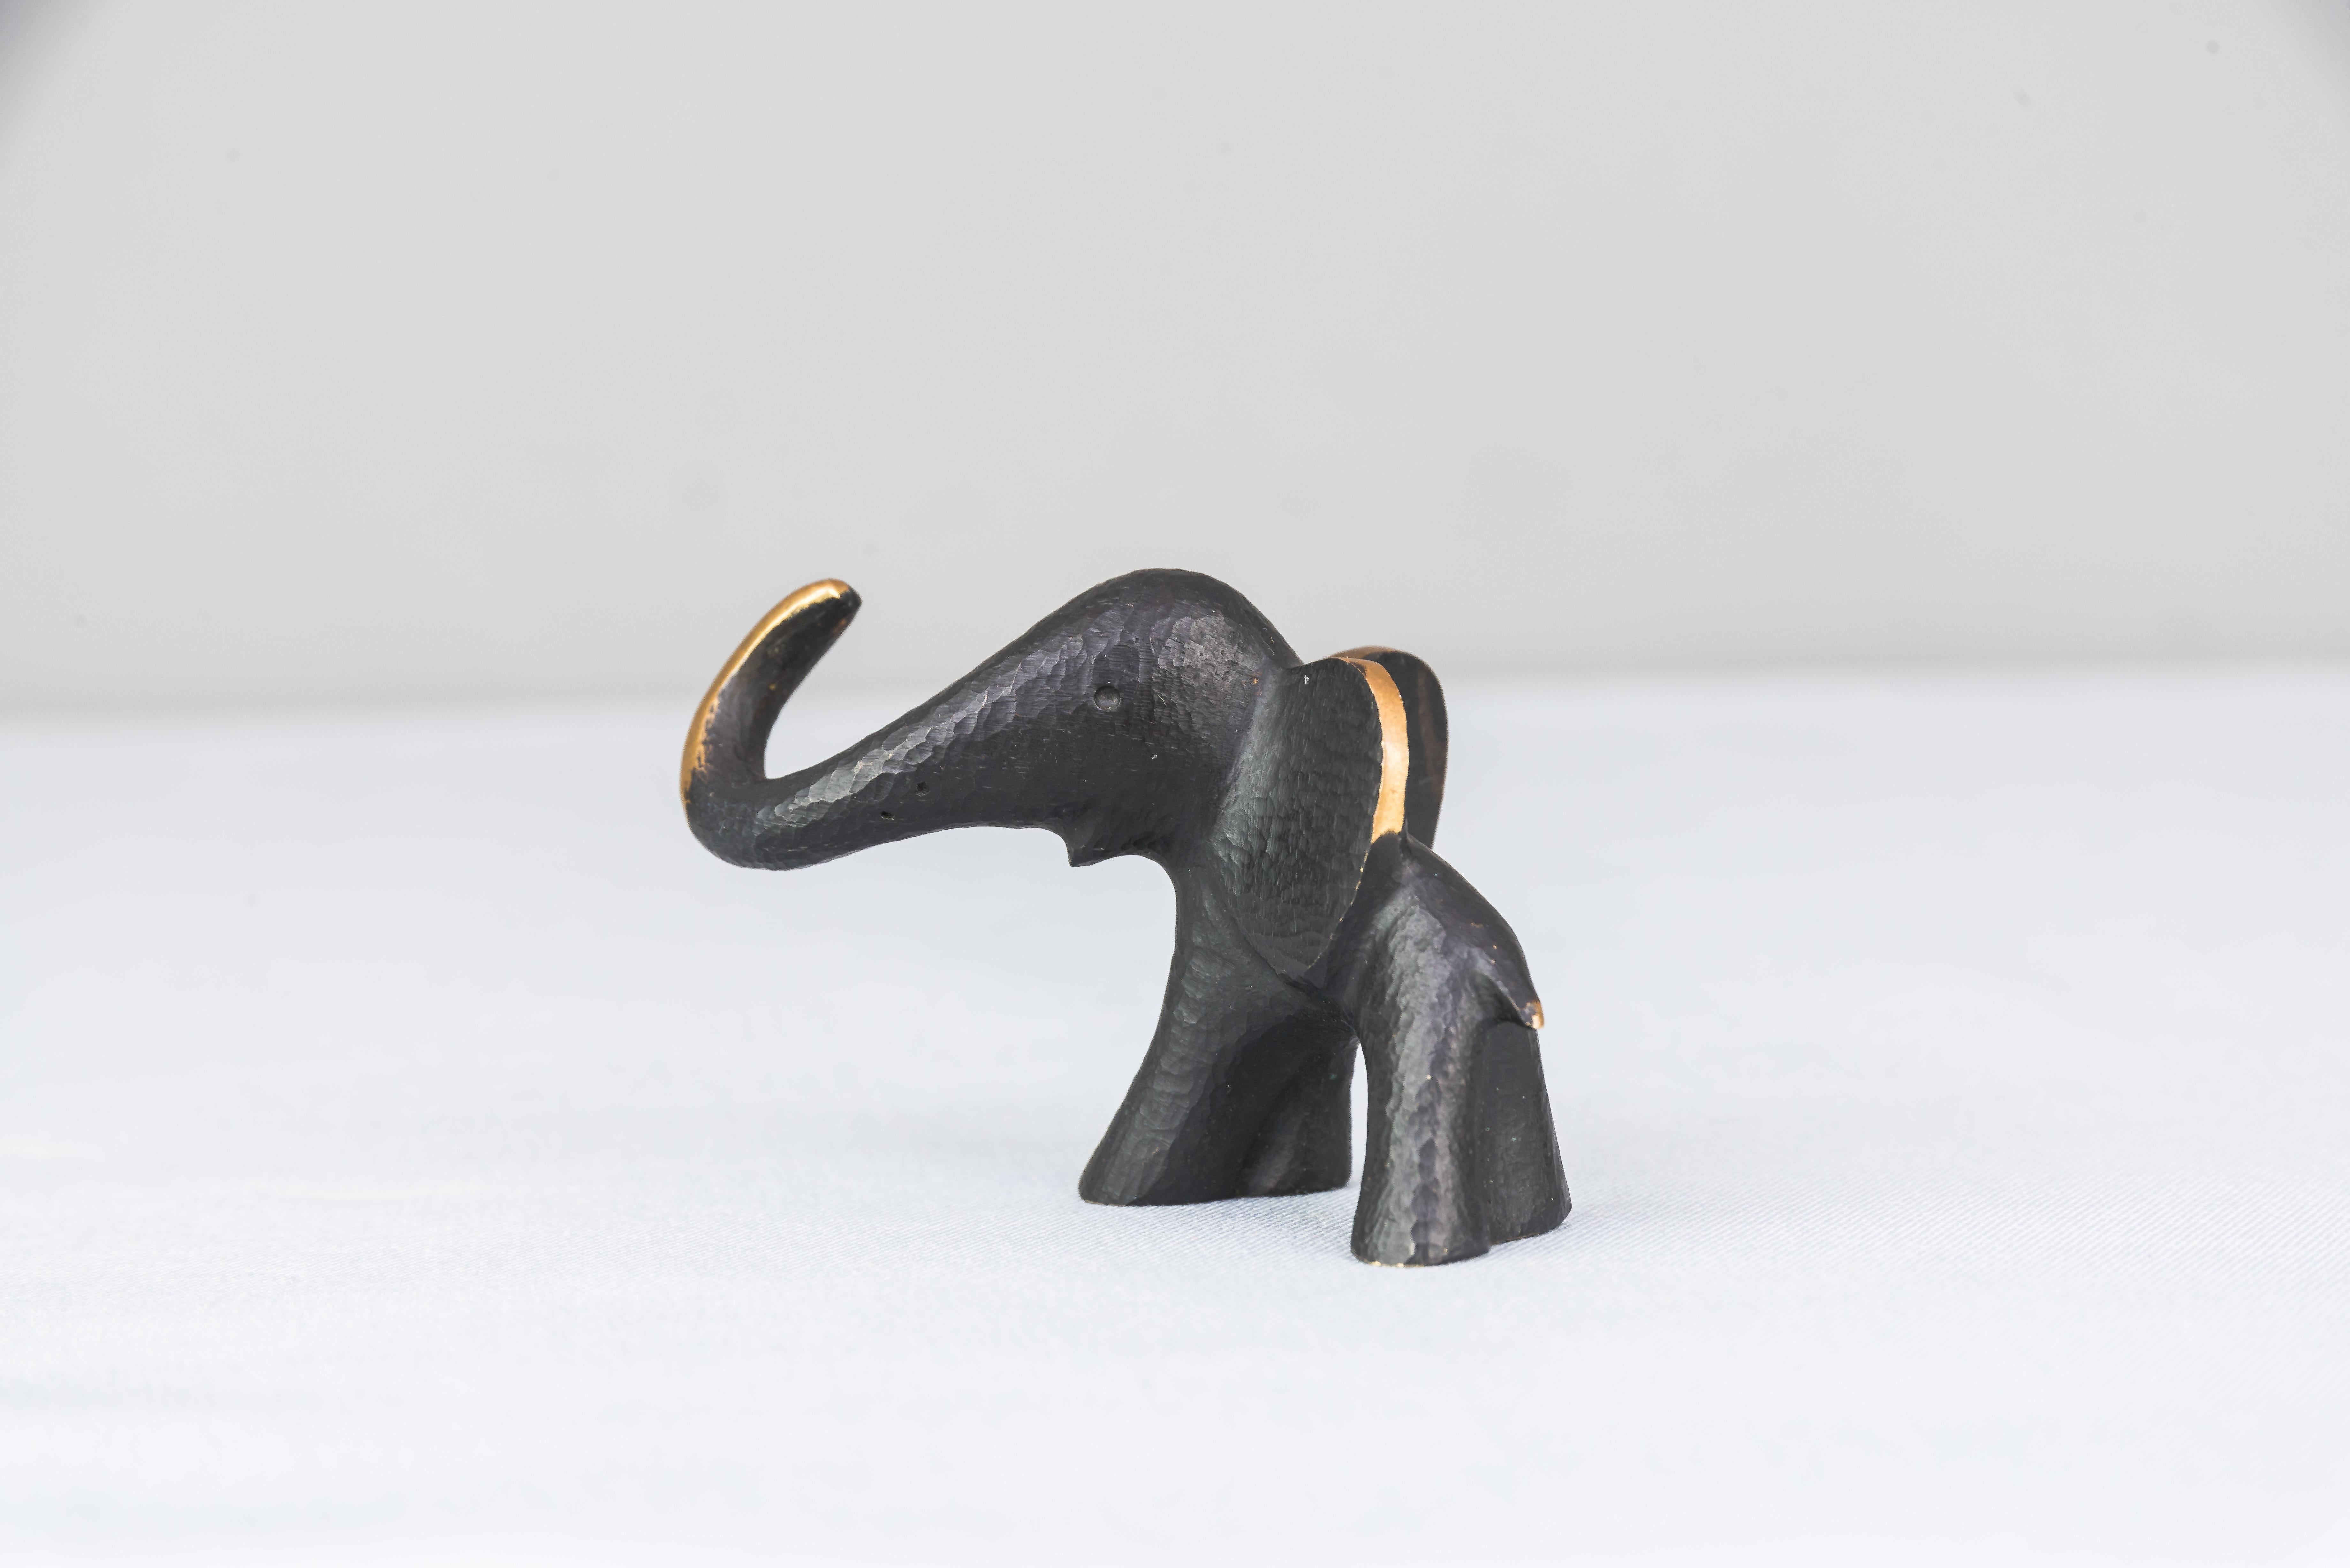 Blackened Elephant Ring Holder Figurine by Herha Baller